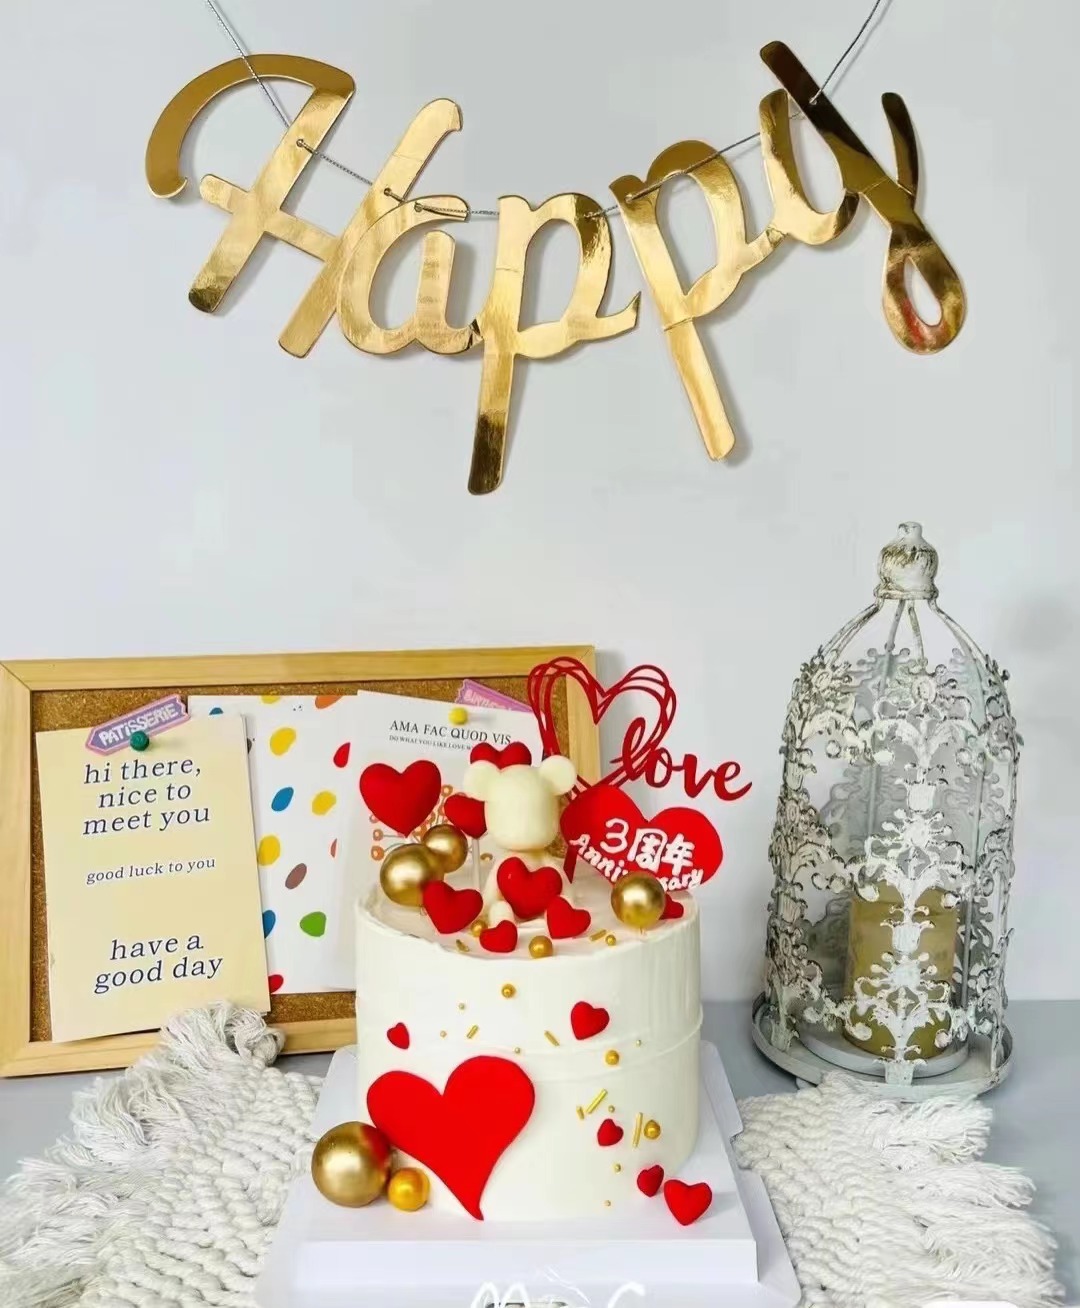 简约网红亚克力蛋糕装饰插牌英文生日快乐情侣暴富烘焙插件10个装 - 图1